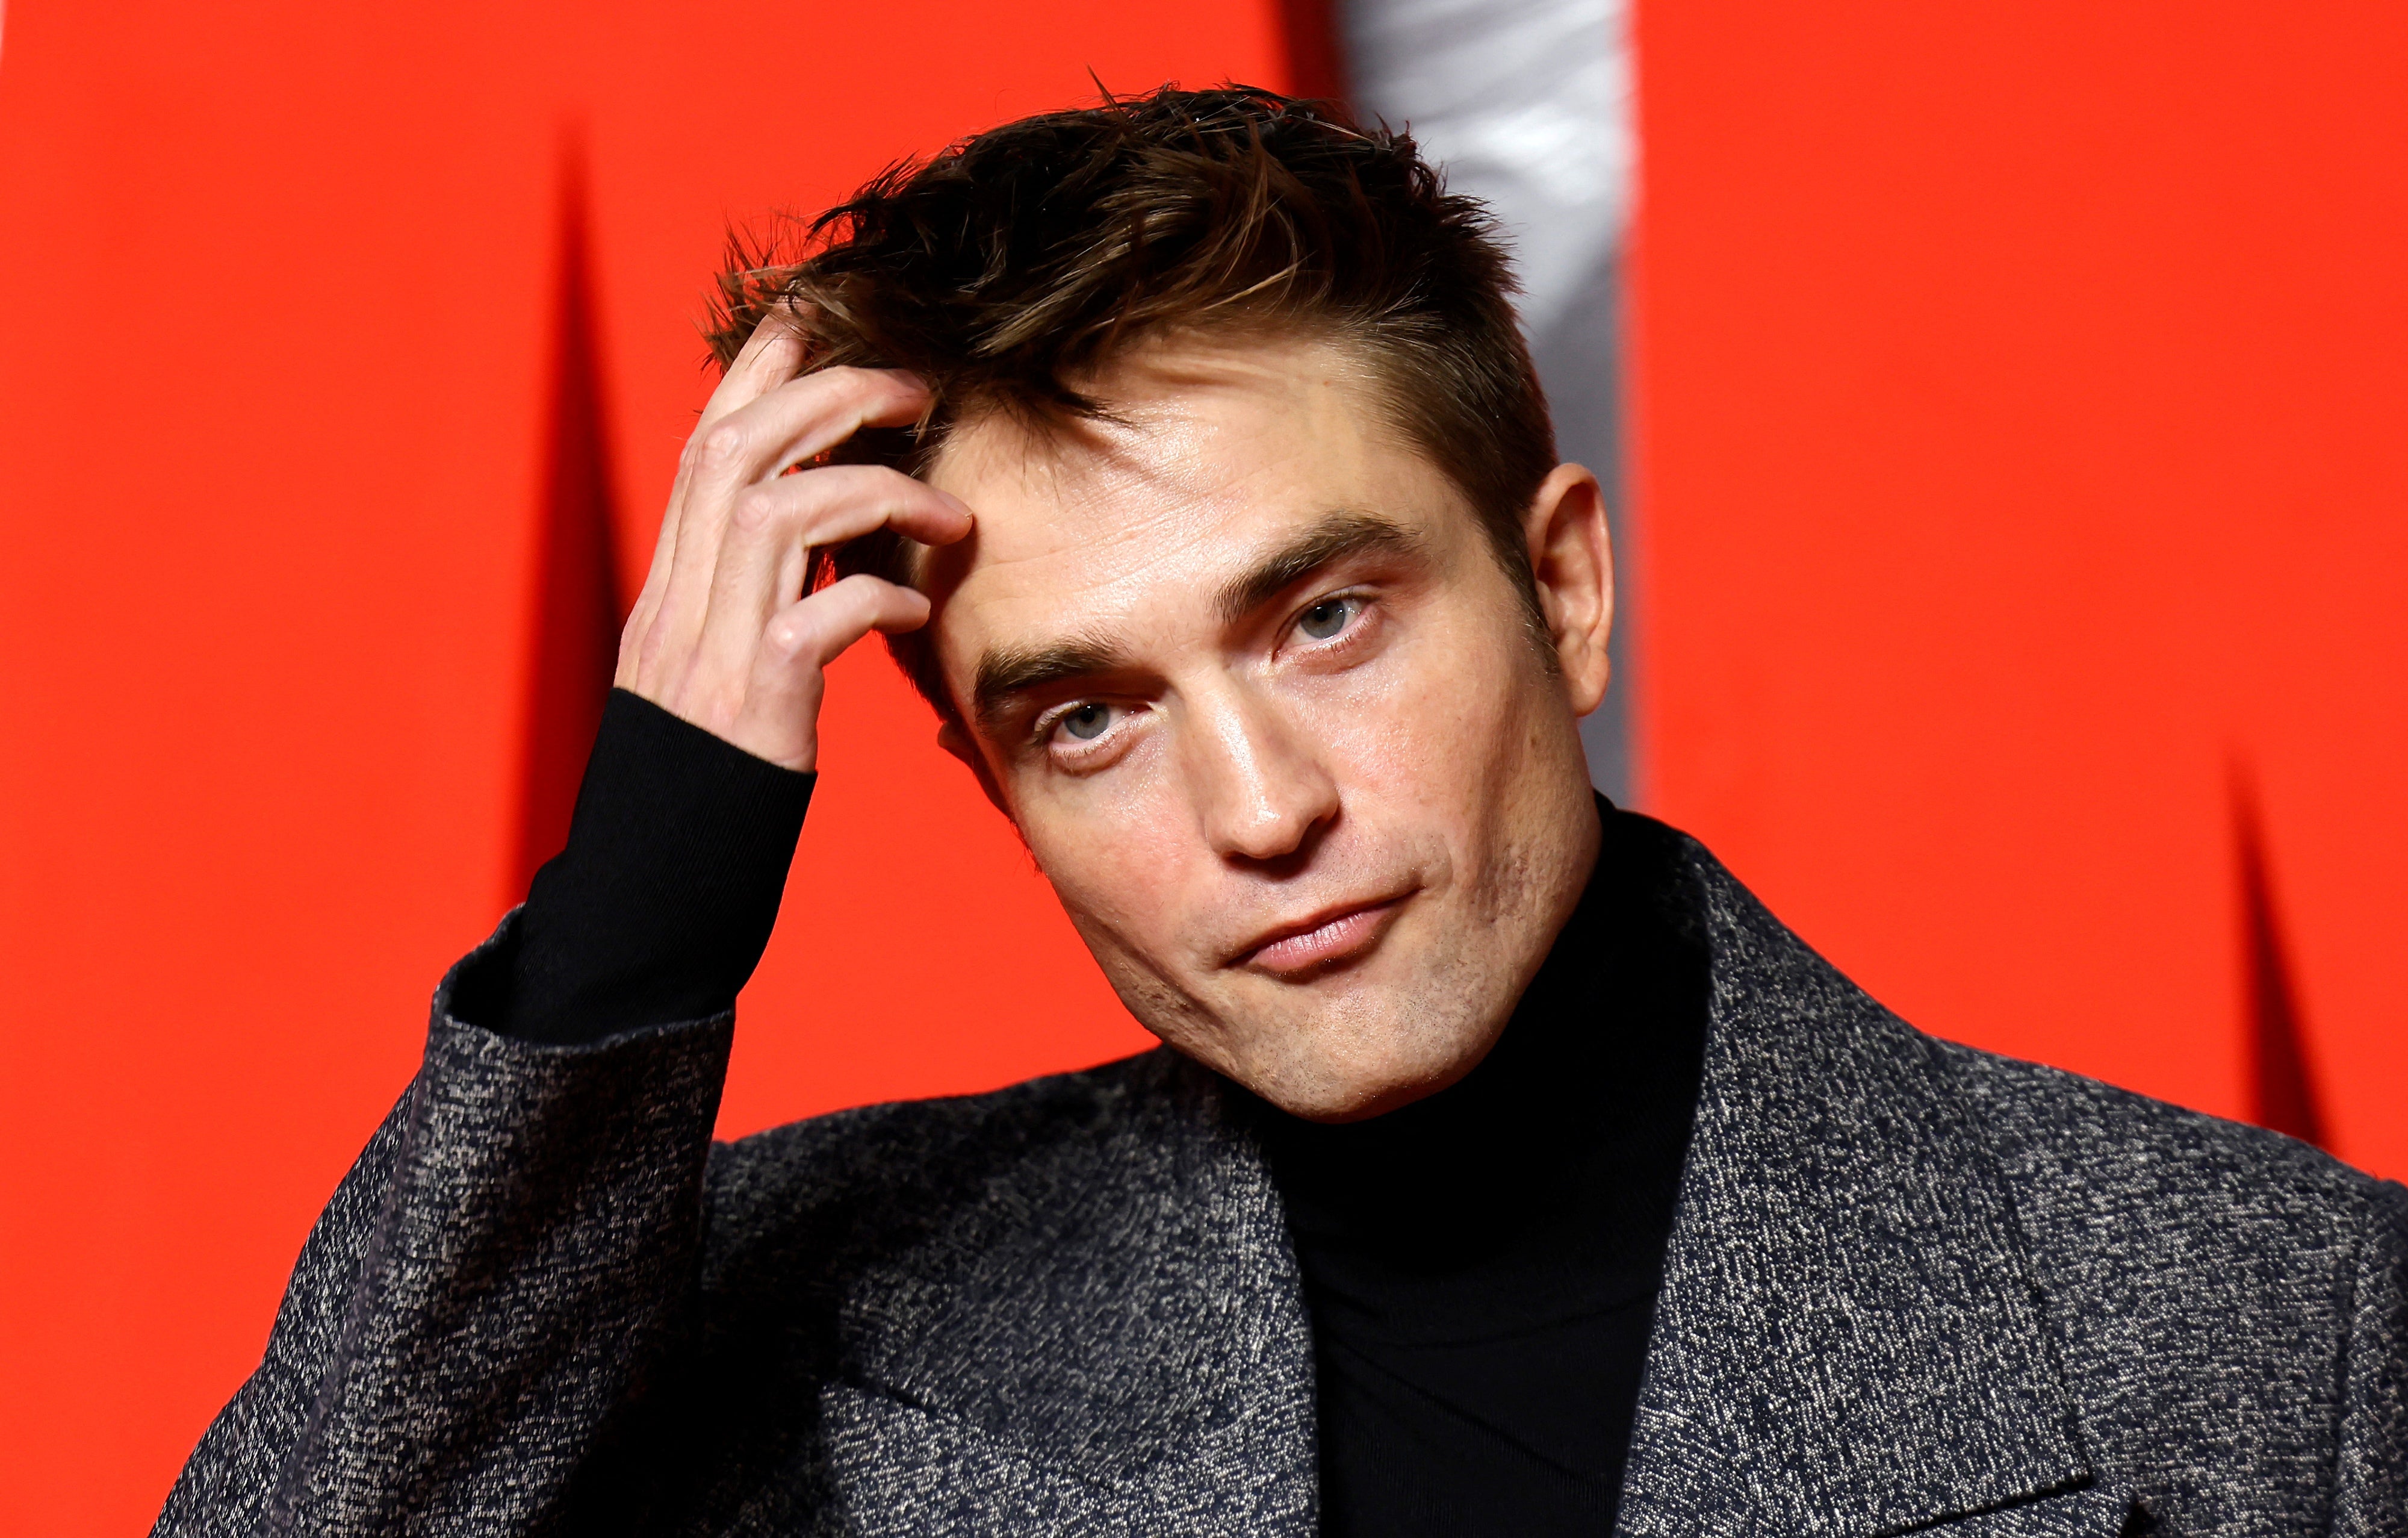 Pattinson will reprise his role as Batman in the film sequel